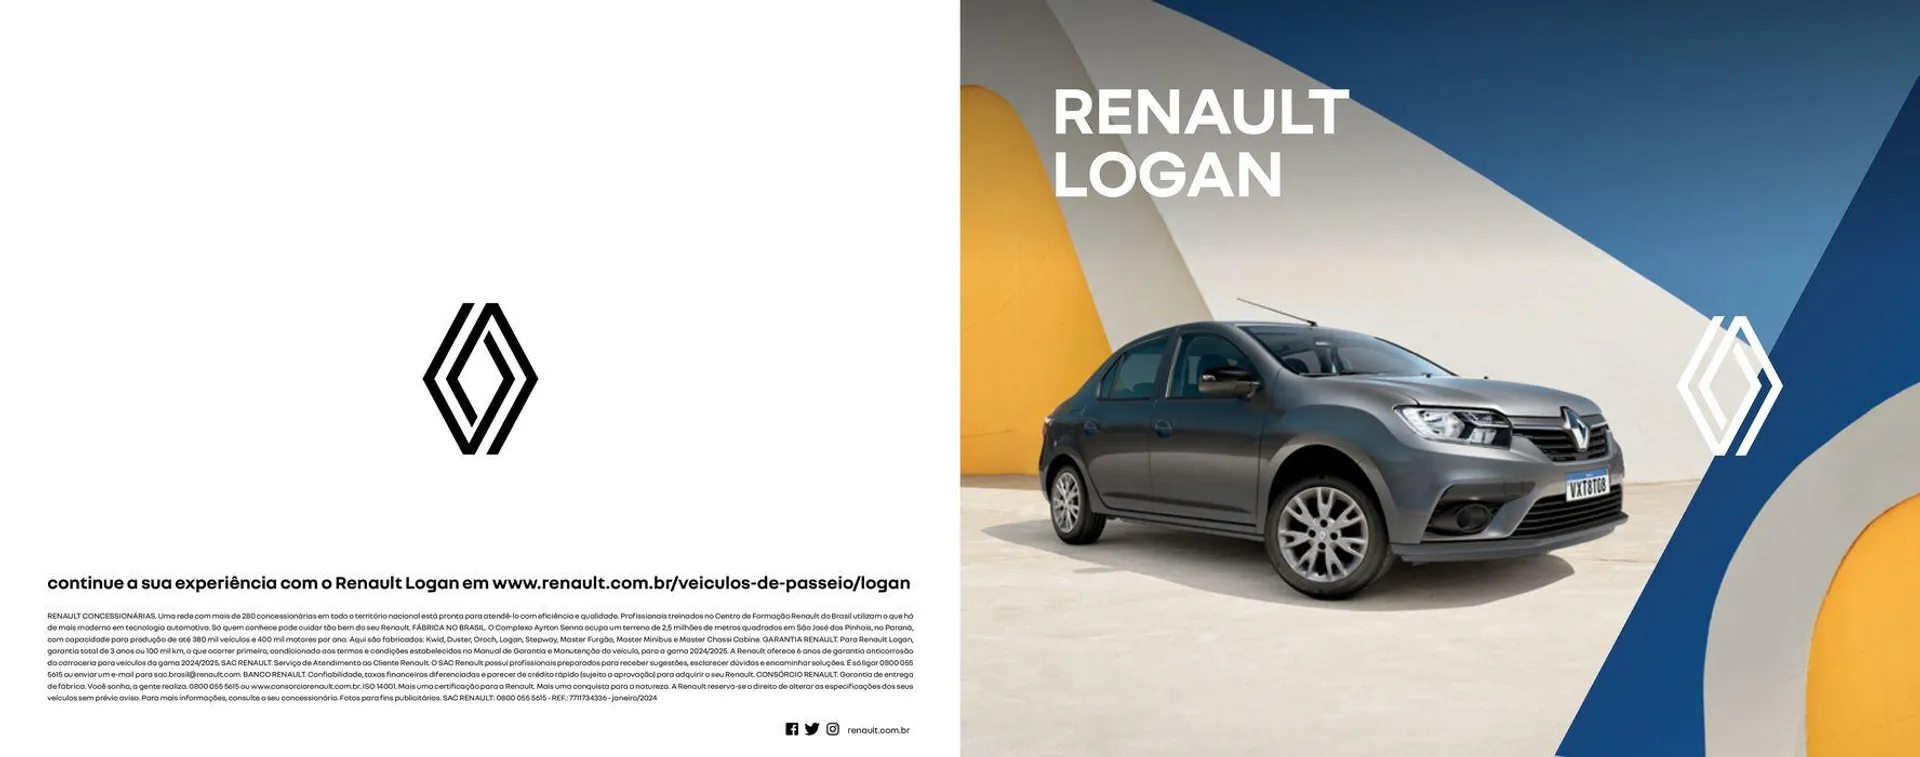 Renault Logan - 1